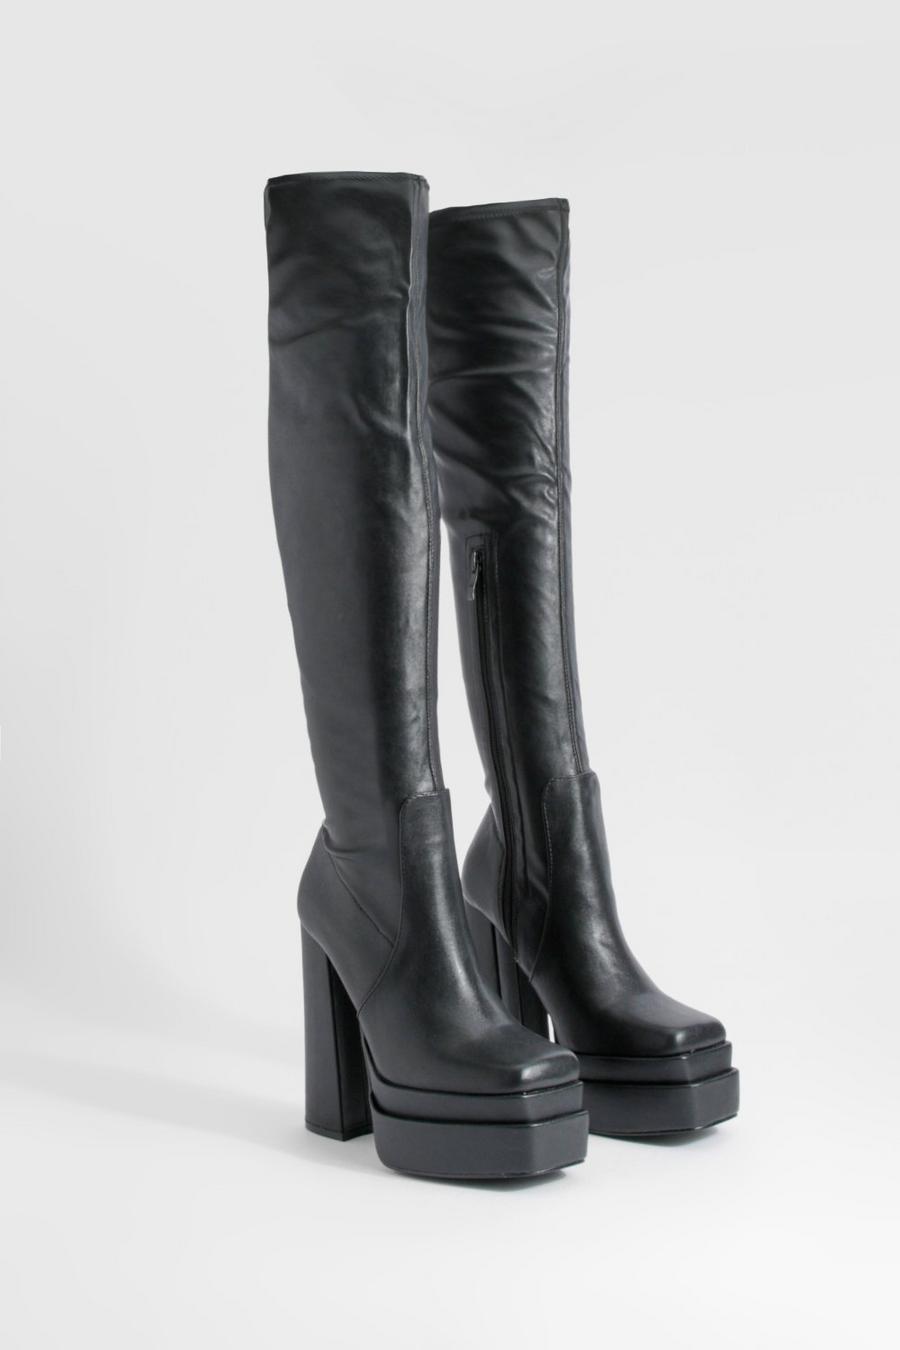 Botas de caña alta y cuero sintético elásticas con plataforma y tacón grueso, Black